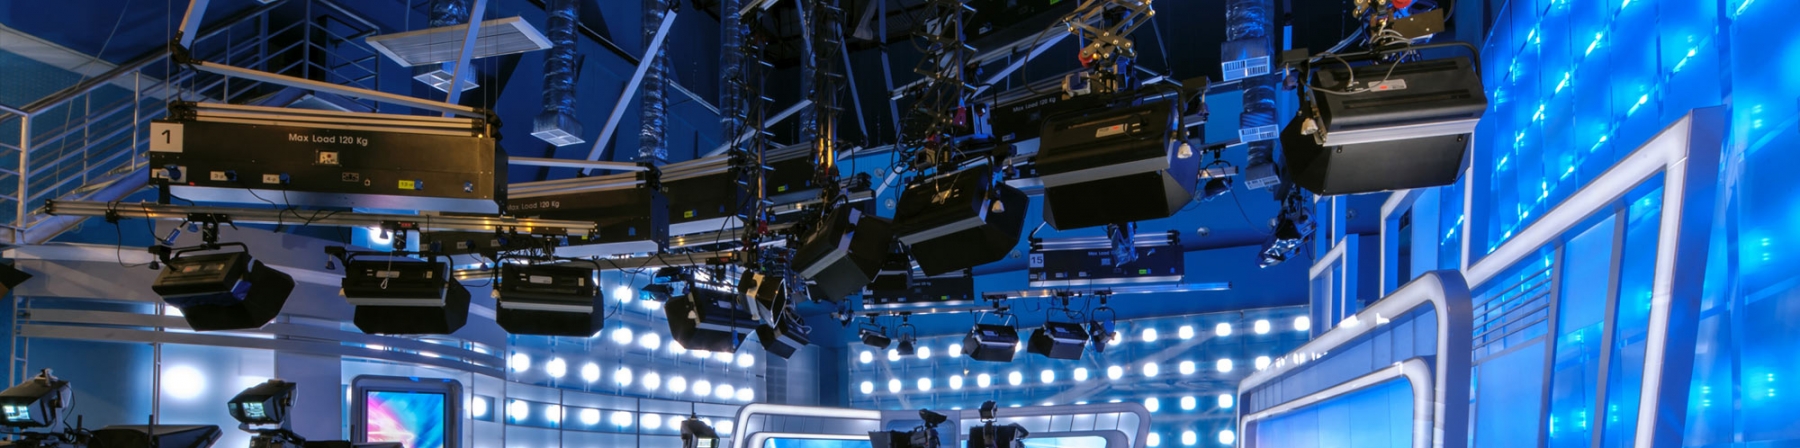 Por noveno año consecutivo, Caracol Televisión confirma su liderazgo